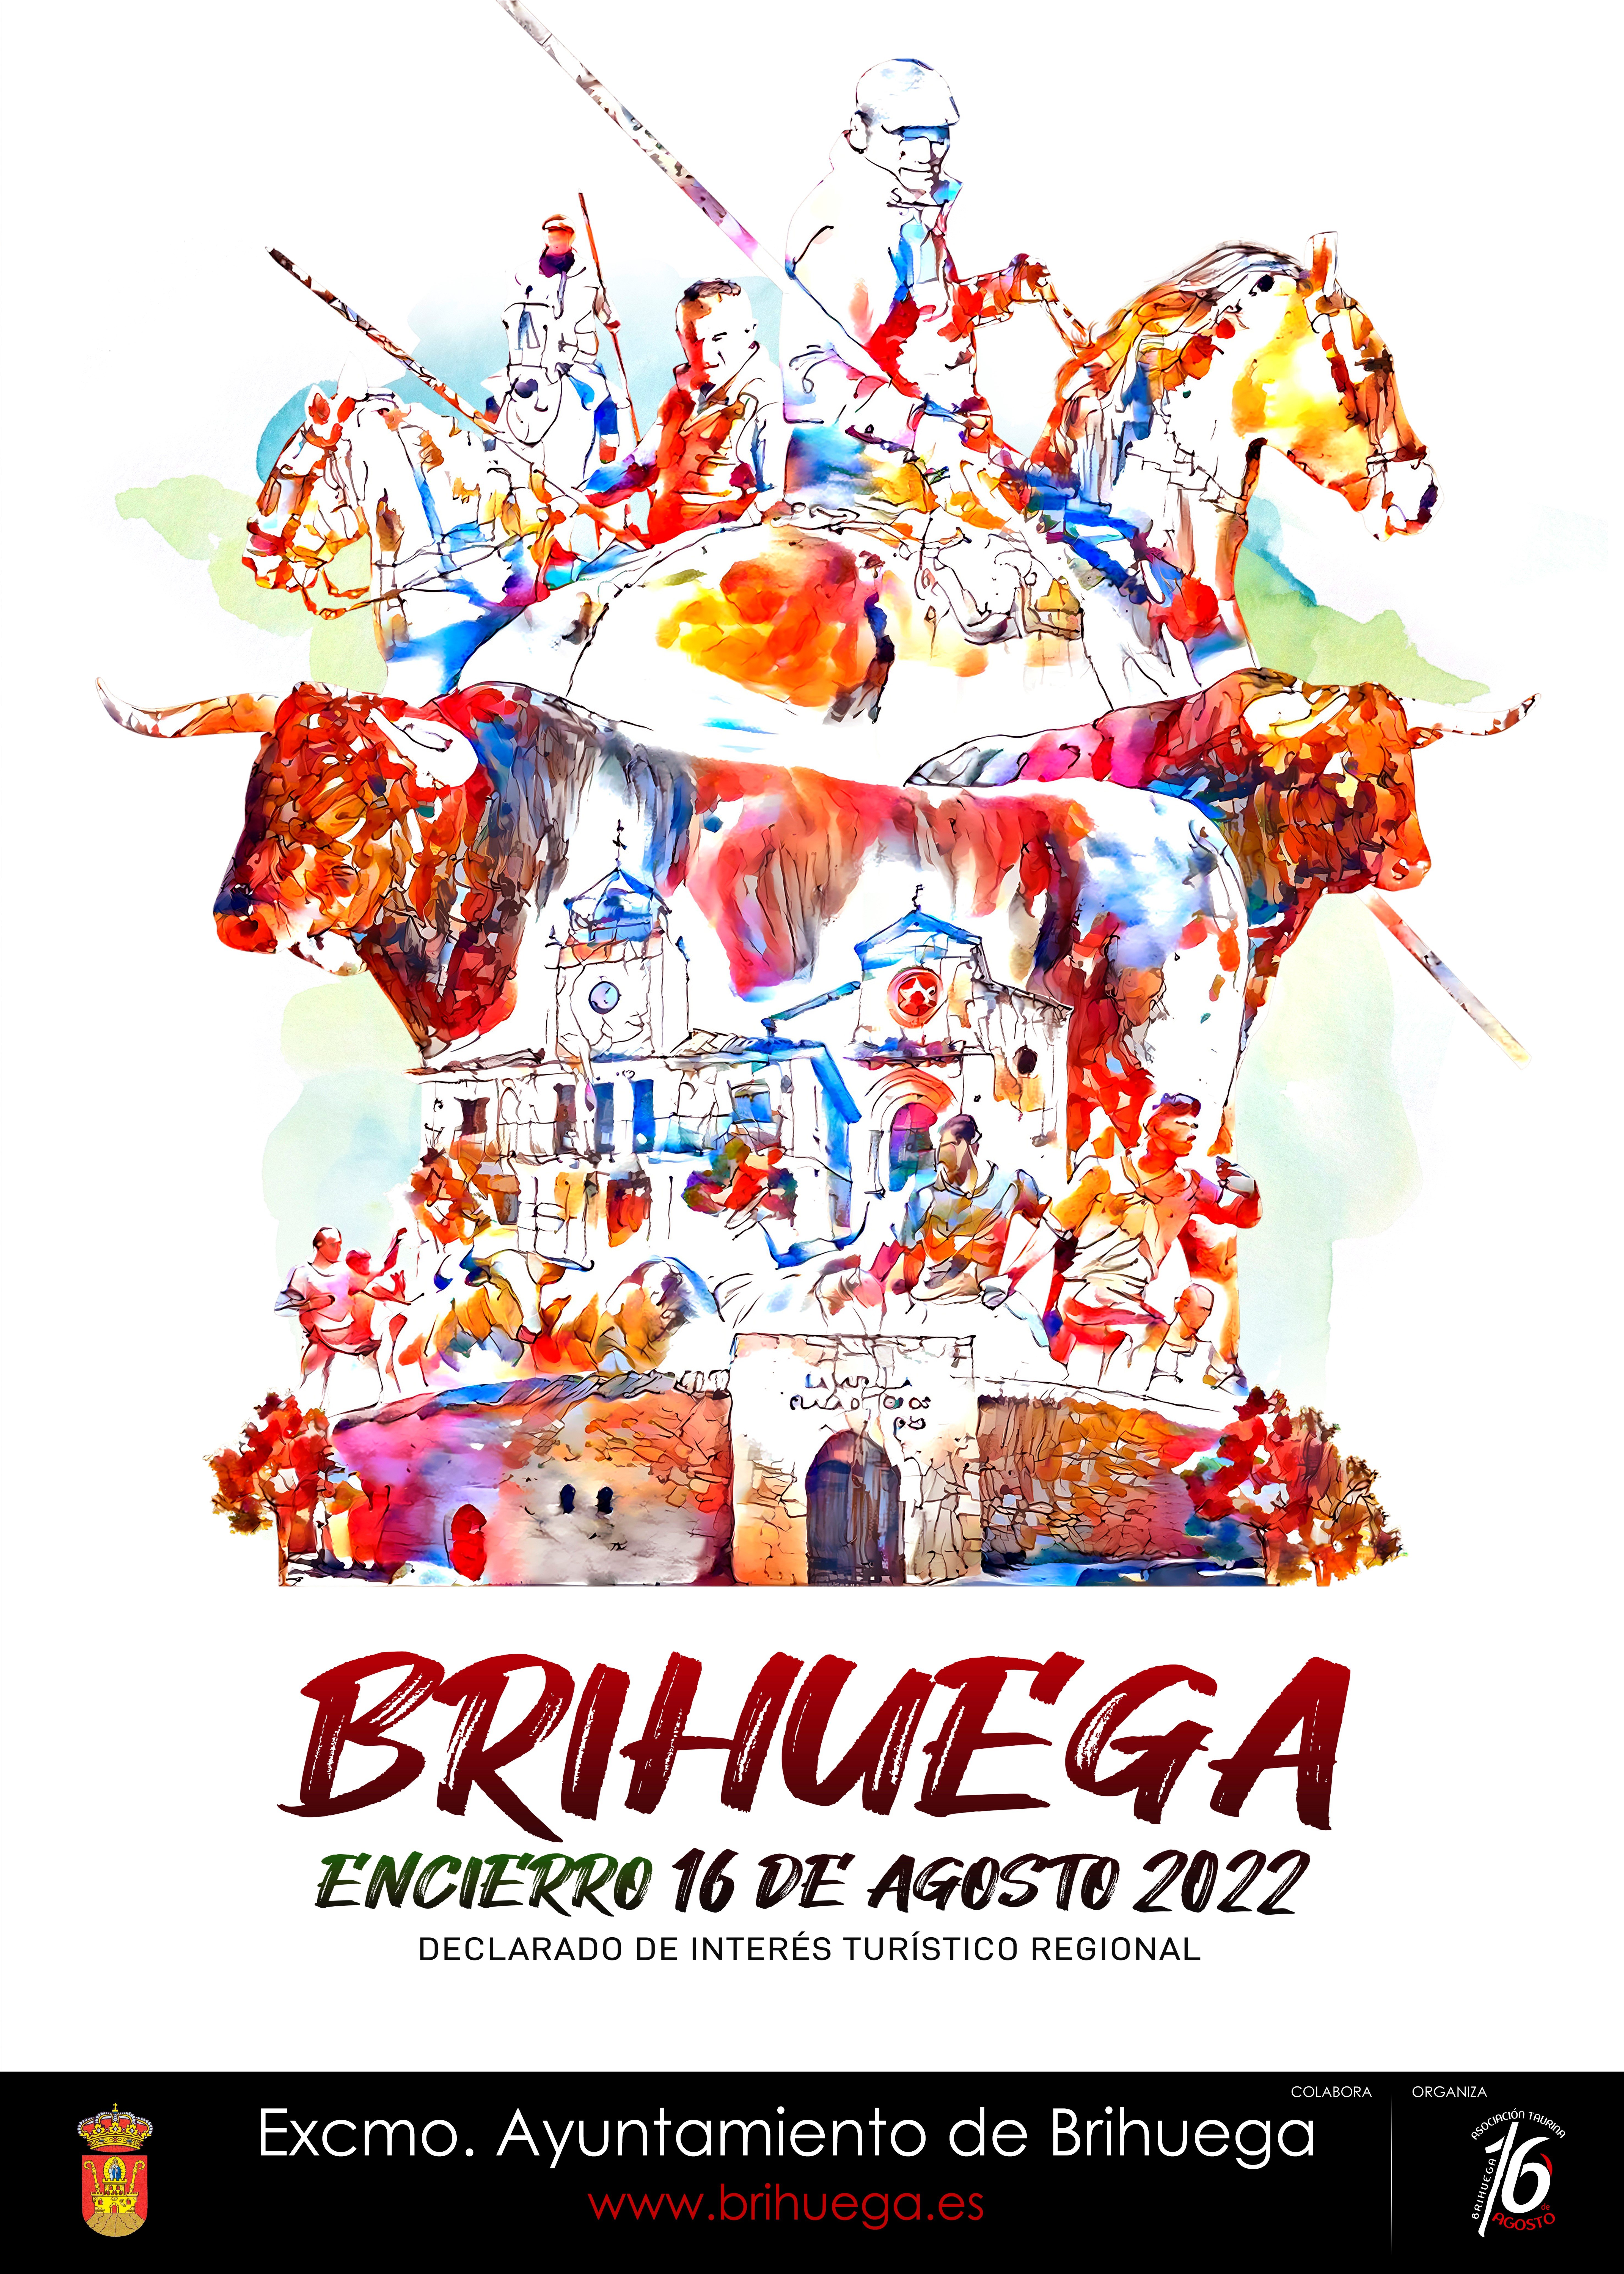 Cartel anunciador del encierro de Brihuega de 2022.